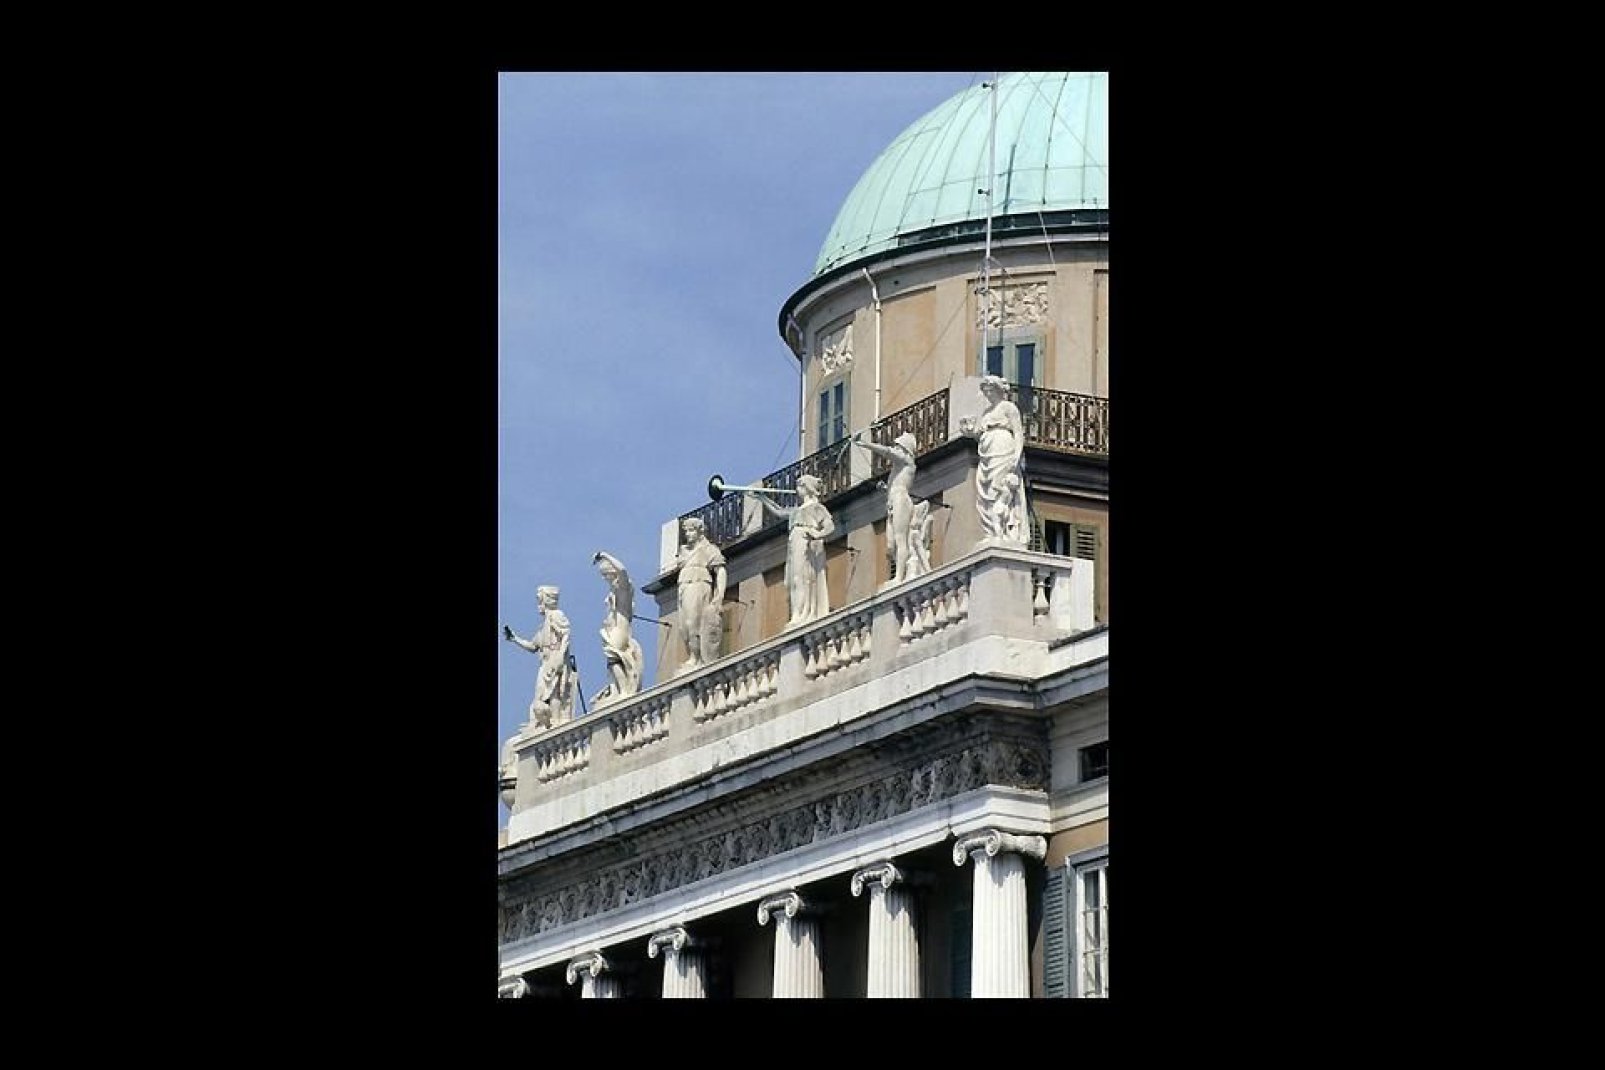 Commandé par le commerçant grec Demetrio Carciotti, le palais a été projeté au XVIIIè siècle par Matteo Pertsch